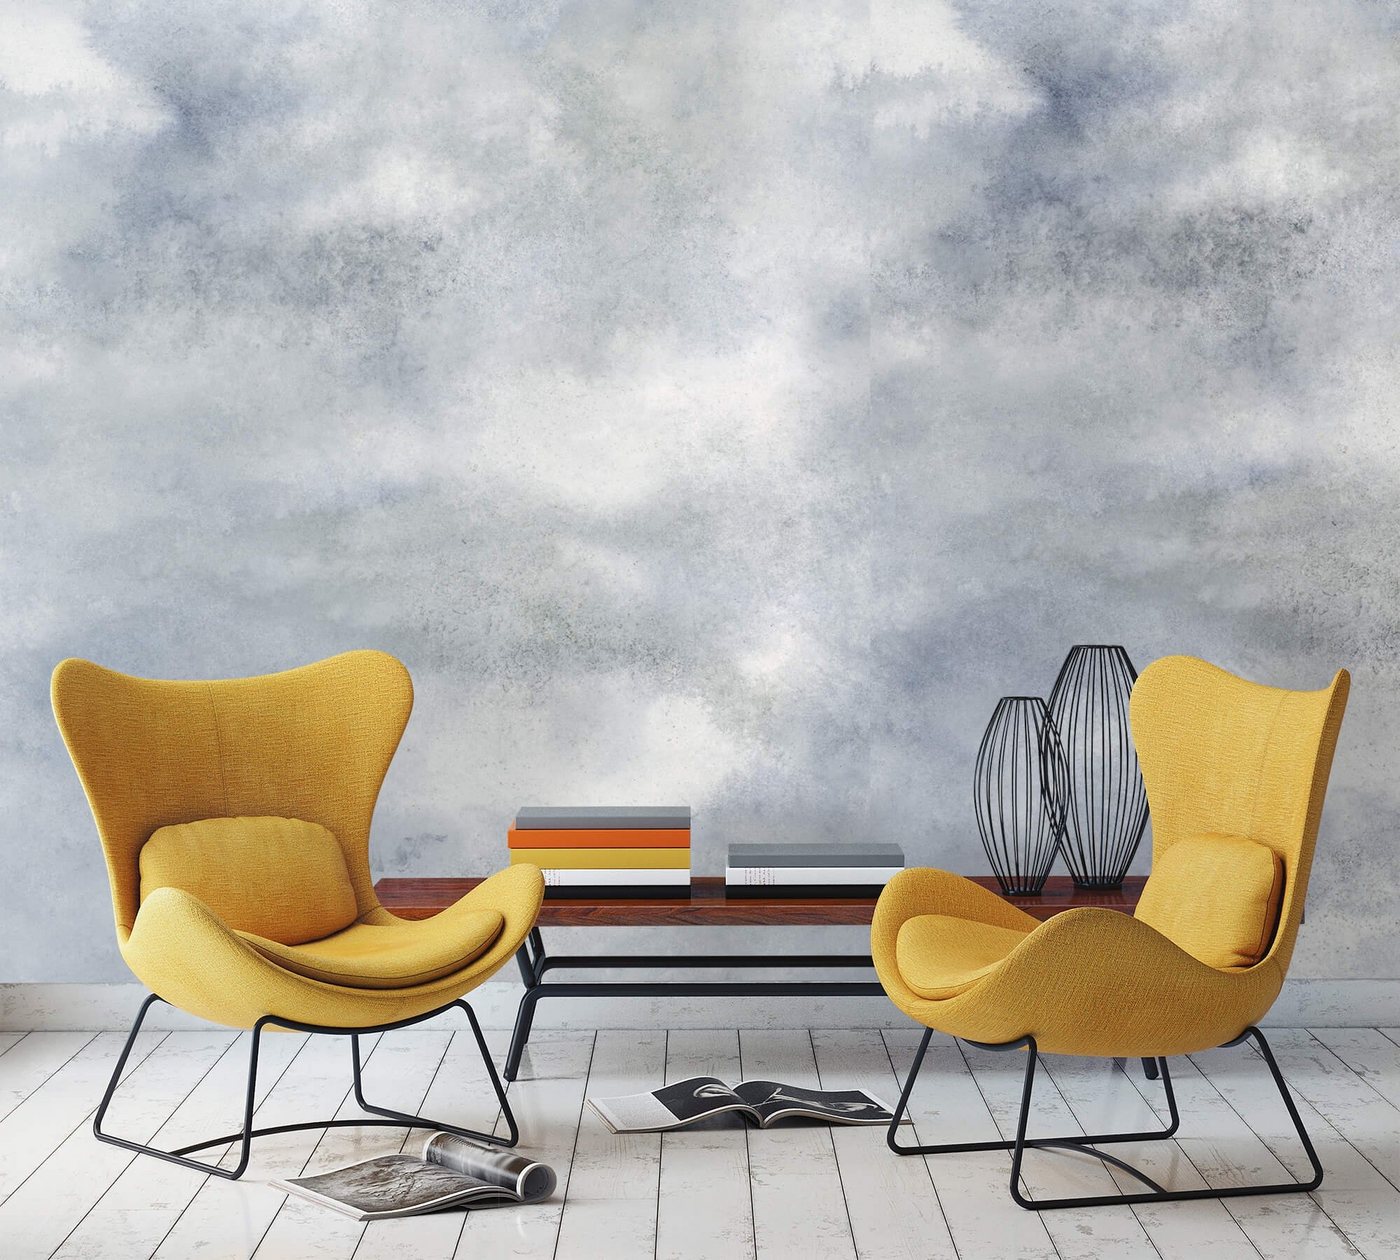 Newroom Vliestapete, [ 3,4 x 2,12m ] großzügiges Motiv - kein wiederkehrendes Muster - nahtlos große Flächen möglich - Fototapete Wandbild Himmel Wolken Made in Germany von Newroom